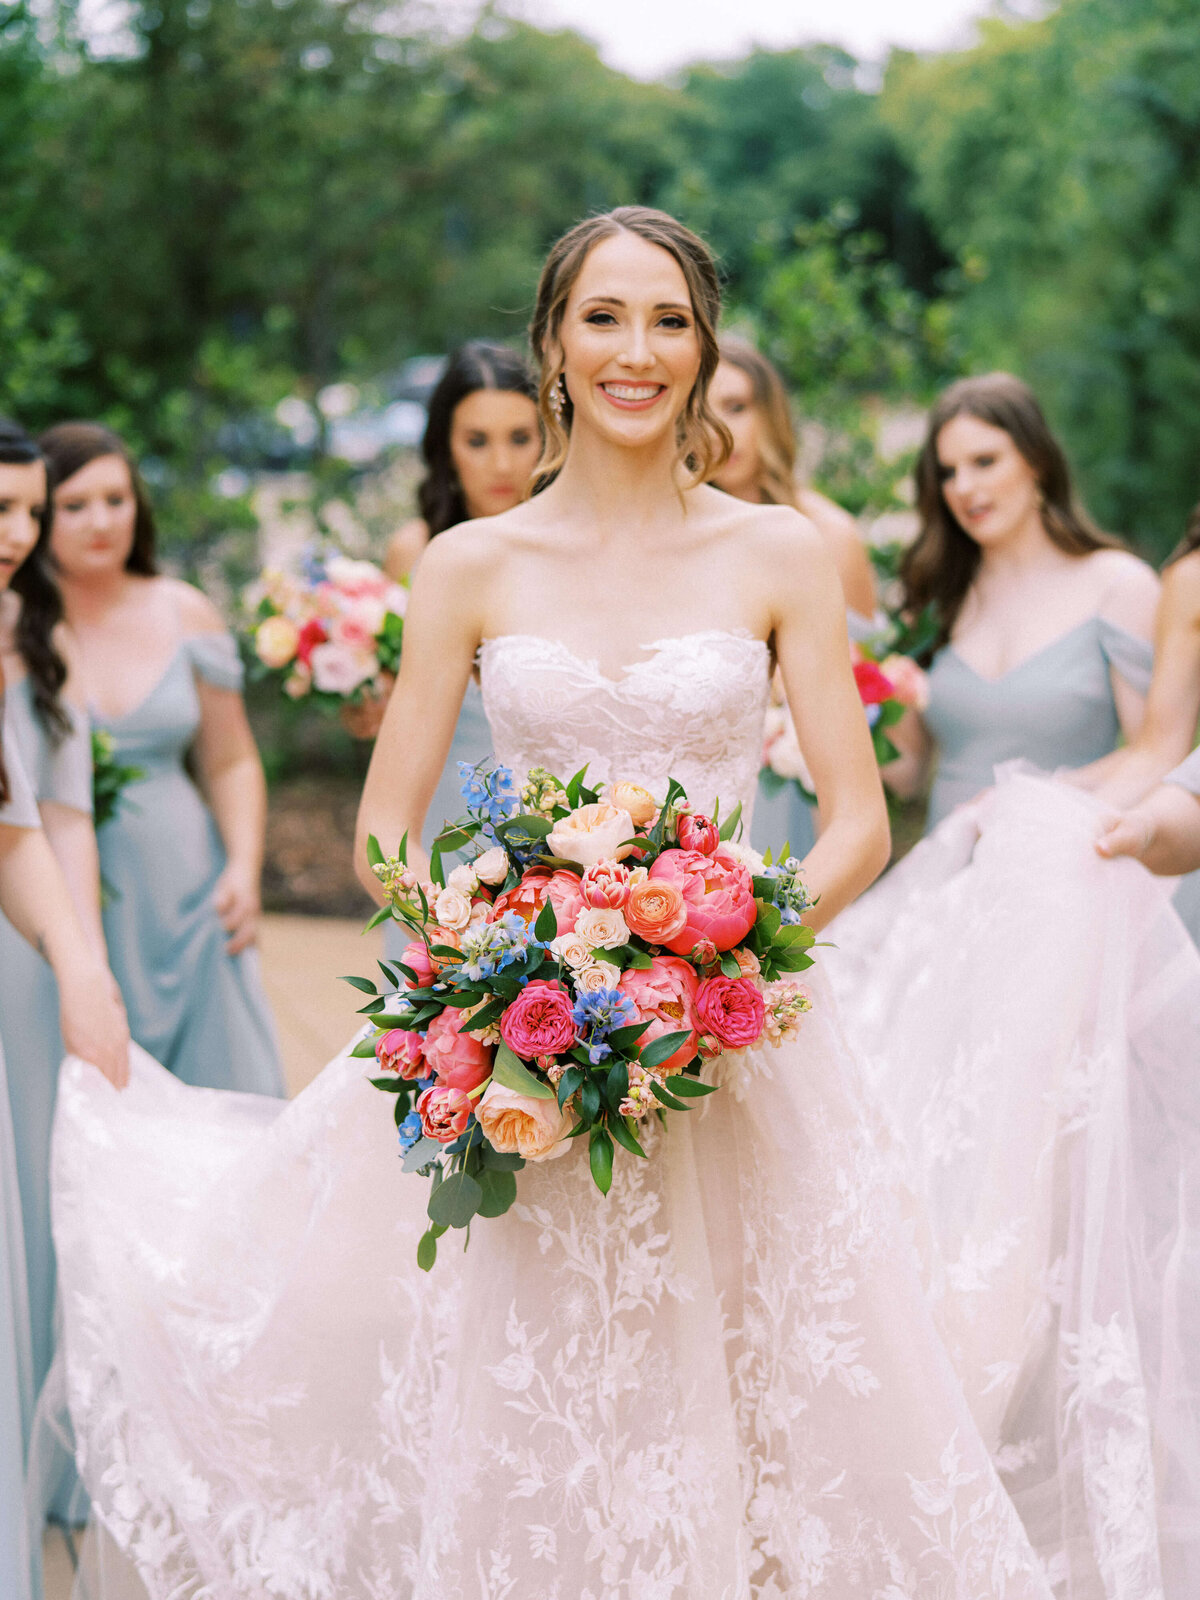 Elegant bride in Monique Lhuillier lace wedding dress holding colorful bouquet at Ashton Gardens